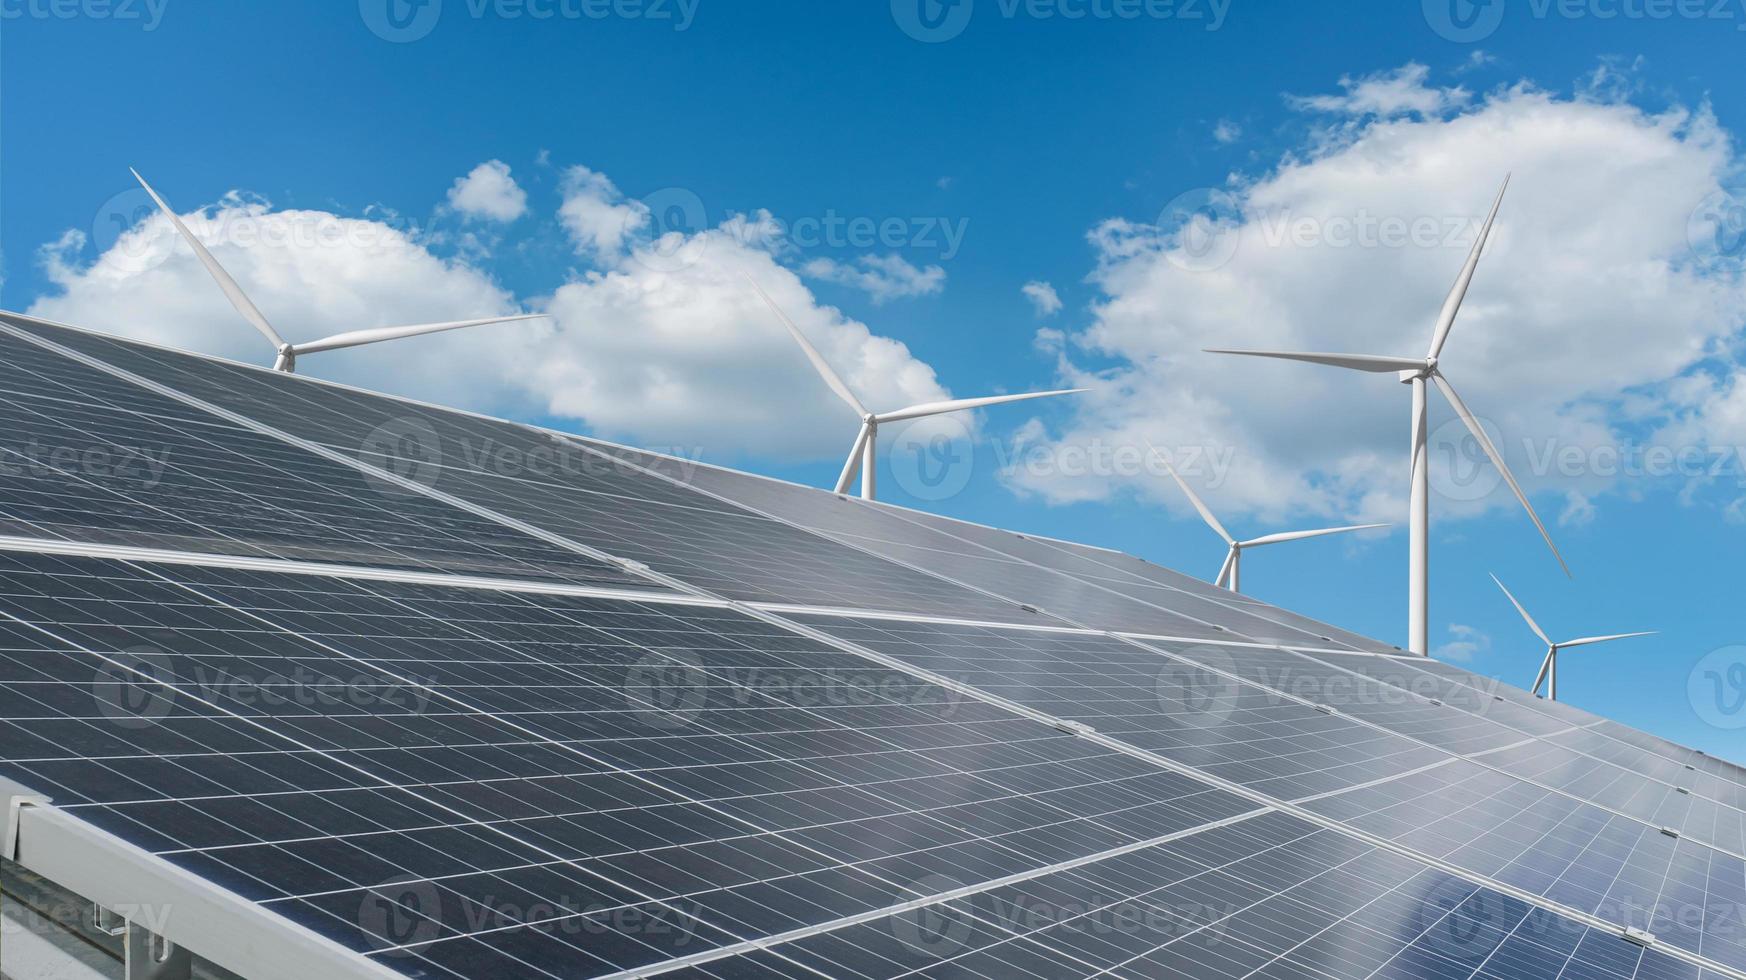 zonnepanelen met windturbine tegen blauwe hemelachtergrond. milieu energiebronnen concept. foto